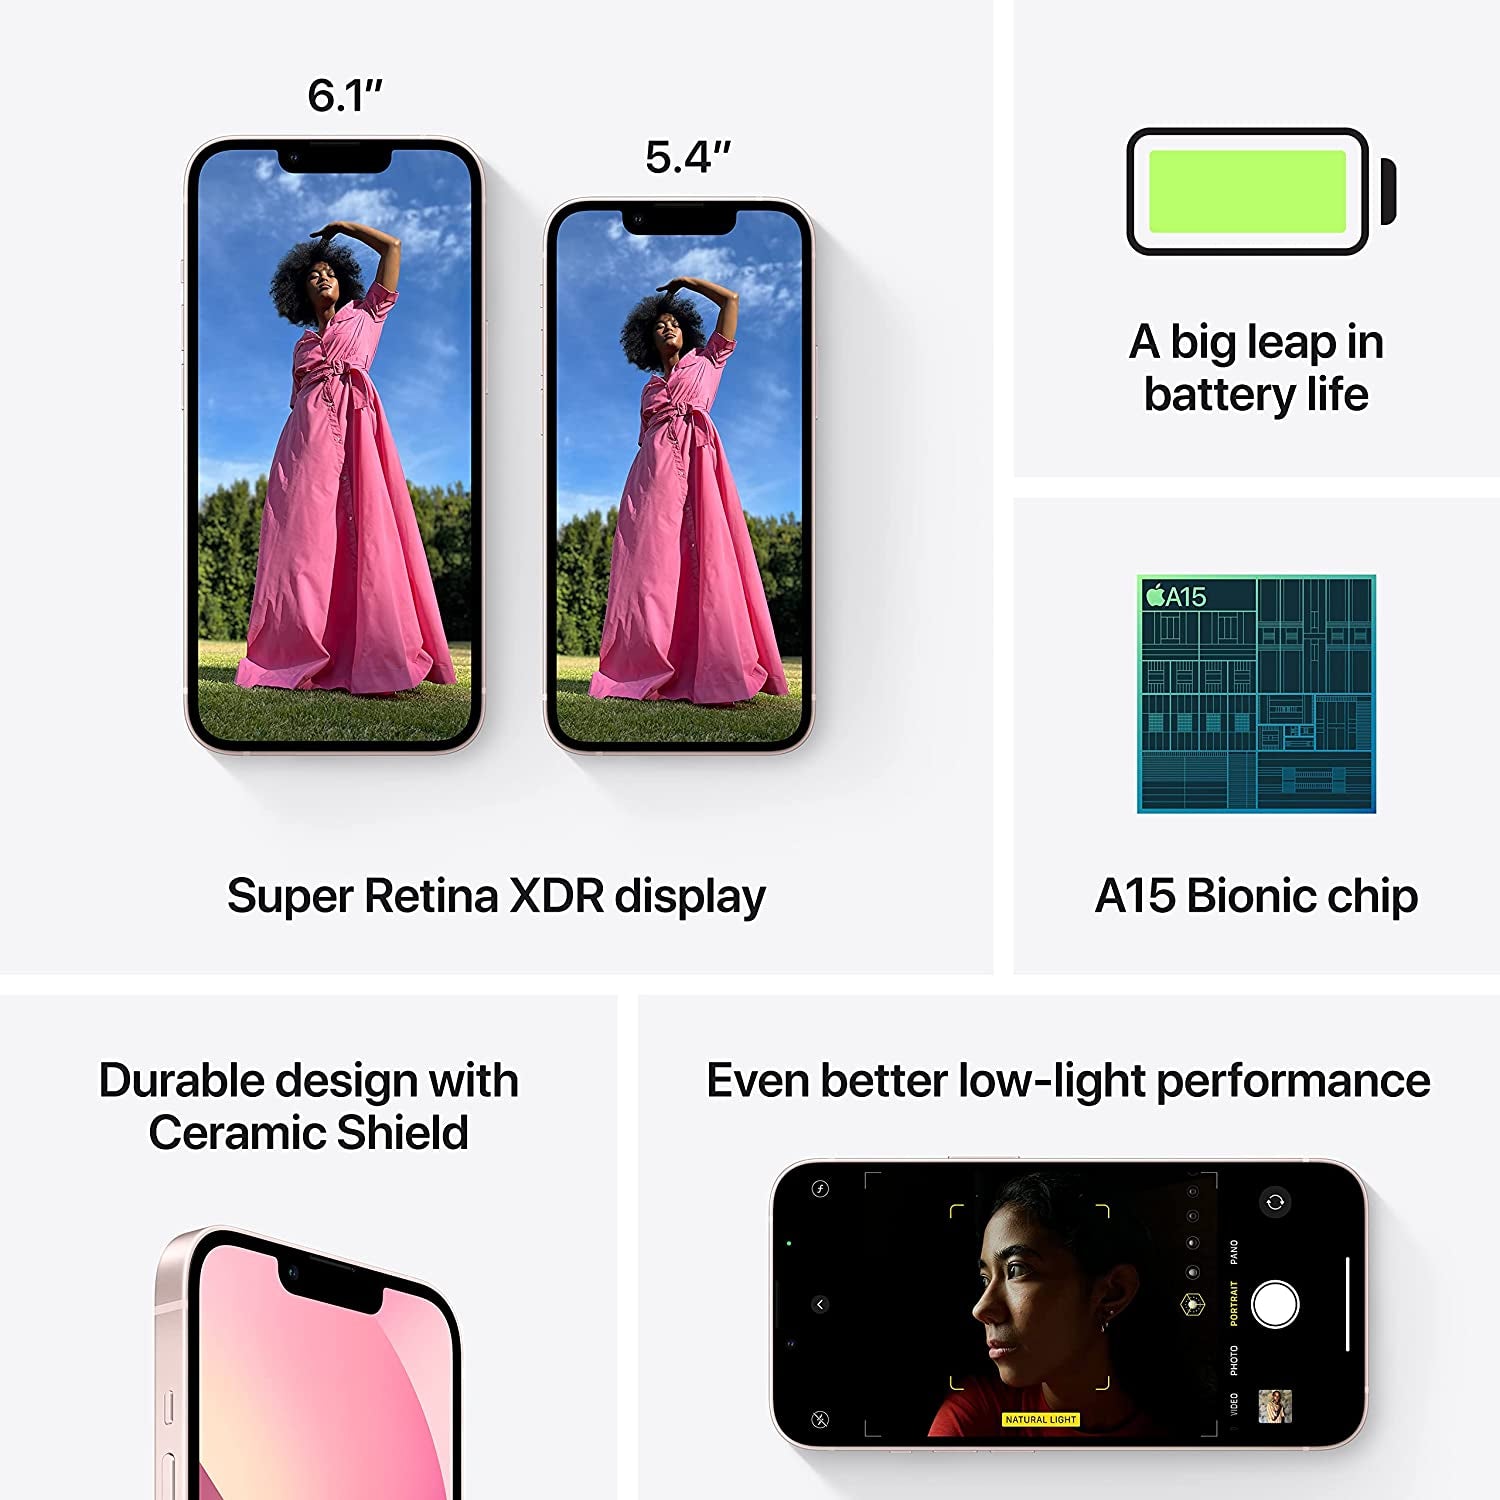 iPhone 13 128GB in Pink - Unlocked (Renewed) - Growing Apex Tech